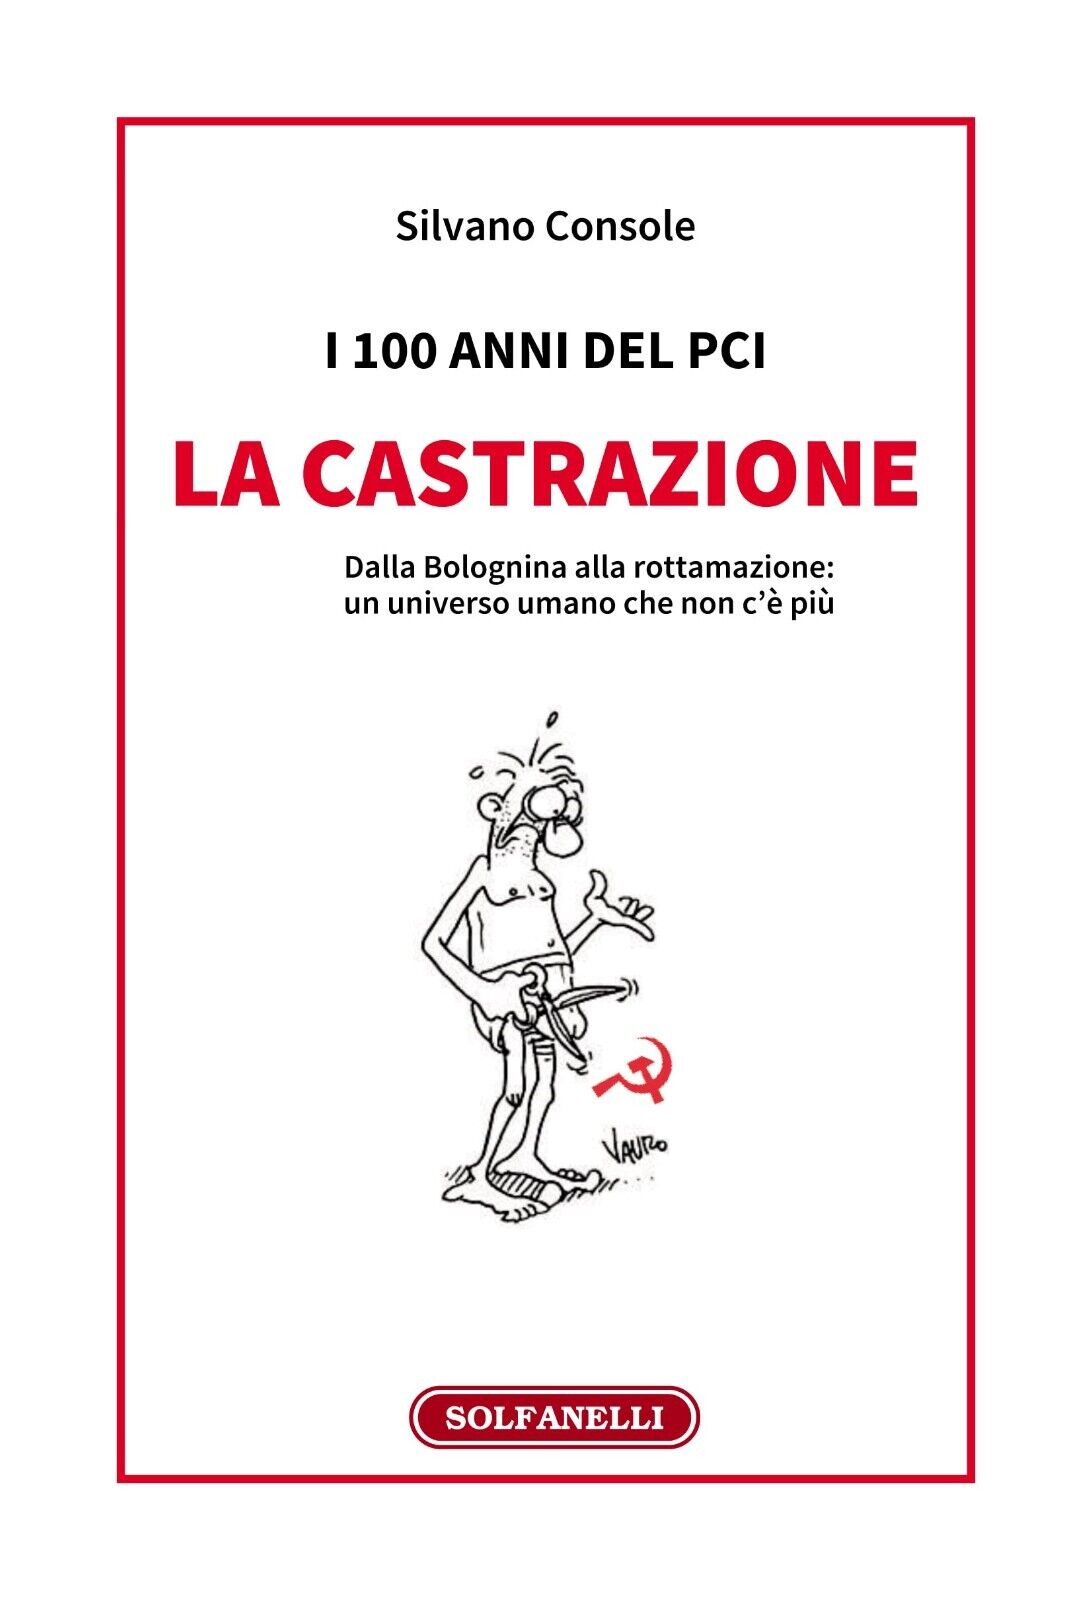  I 100 anni del PCI: la castrazione. Dalla Bolognina alla rottamazione: un unive